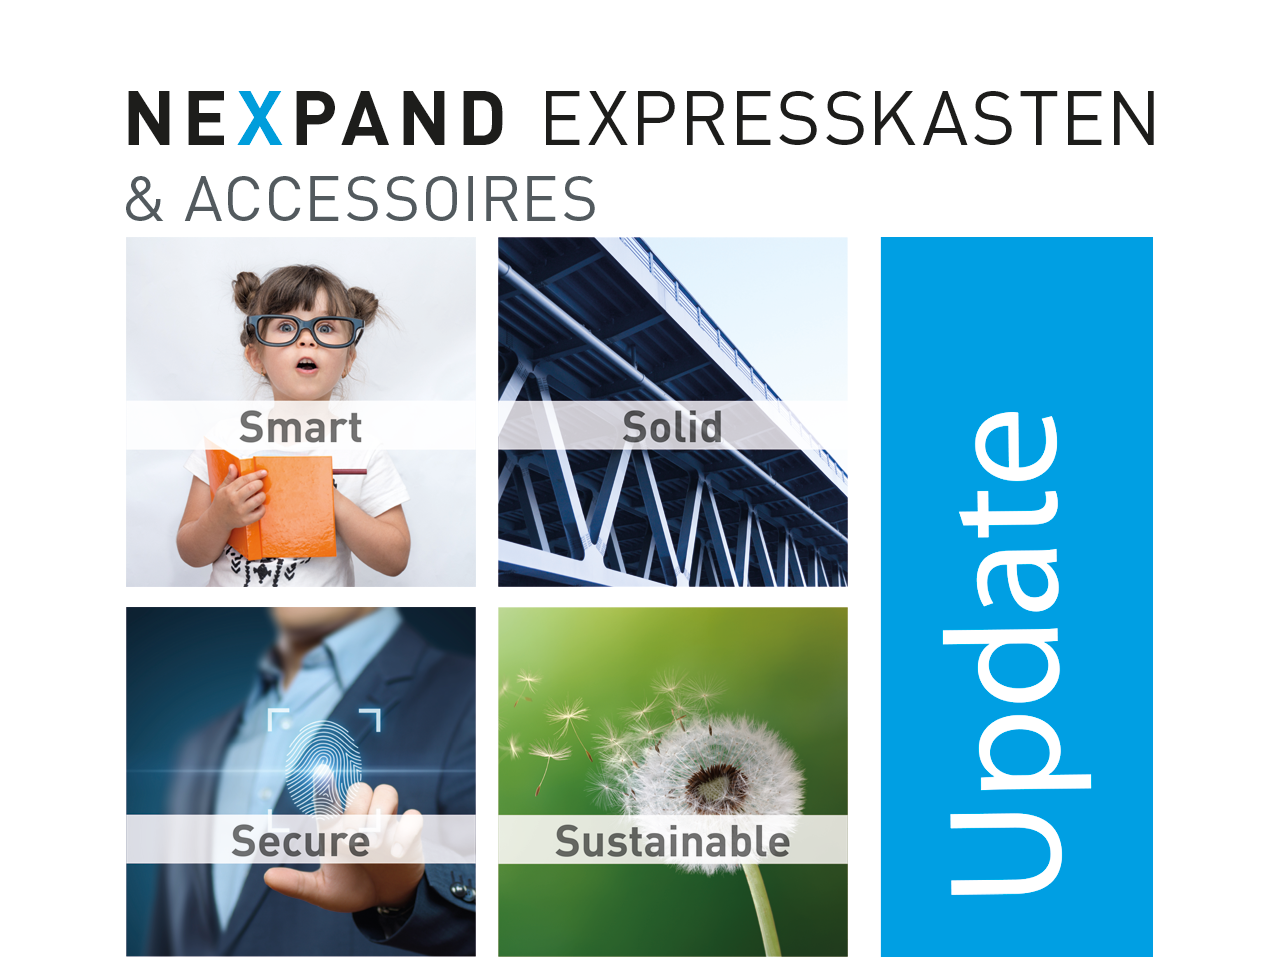 Update Nexpand Expresskasten